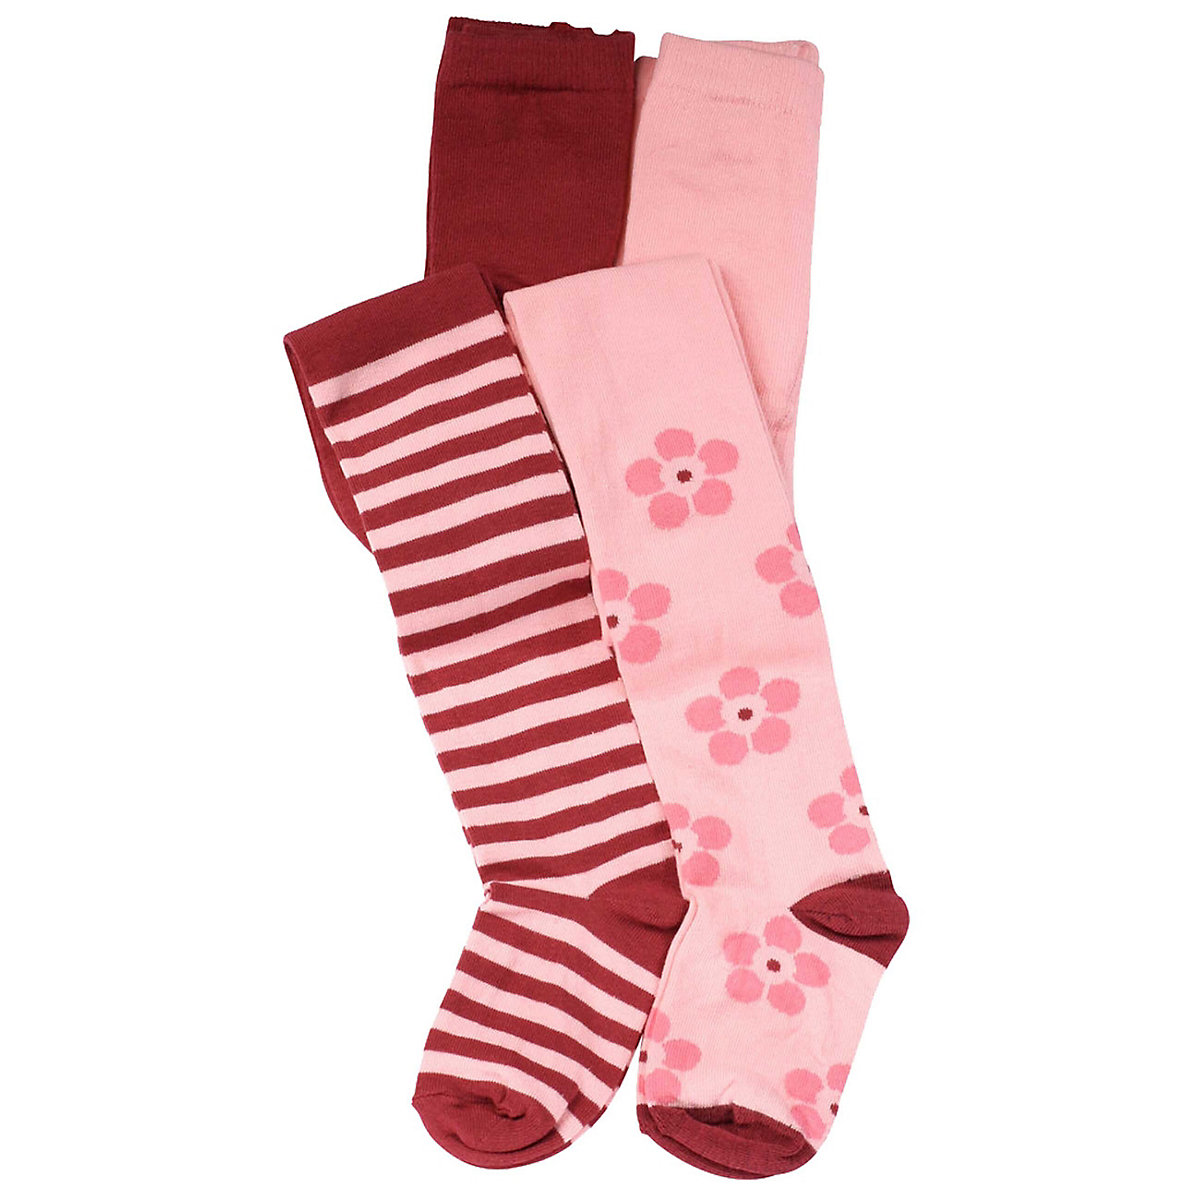 Cotton Prime Kinder Strumpfhosen 4'er Set Strickstrumpfhosen für Mädchen rosa-kombi